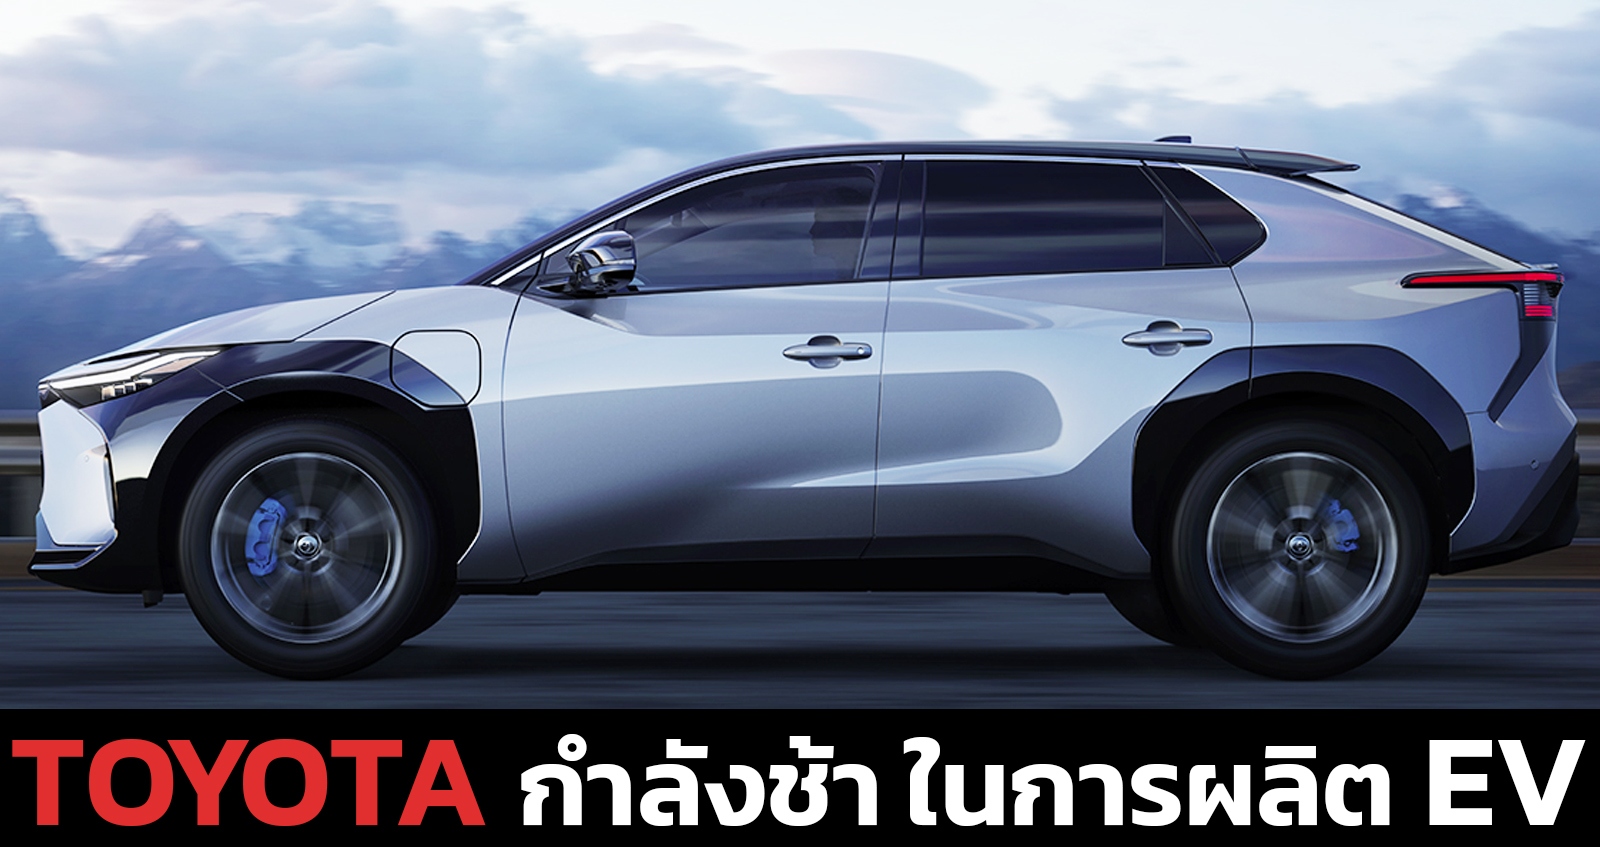 TOYOTA กำลังช้า ในการผลิตรถยนต์ไฟฟ้า และ พยายามทำทุกอย่างเพื่อกีดกันการสนับสนุน EVs